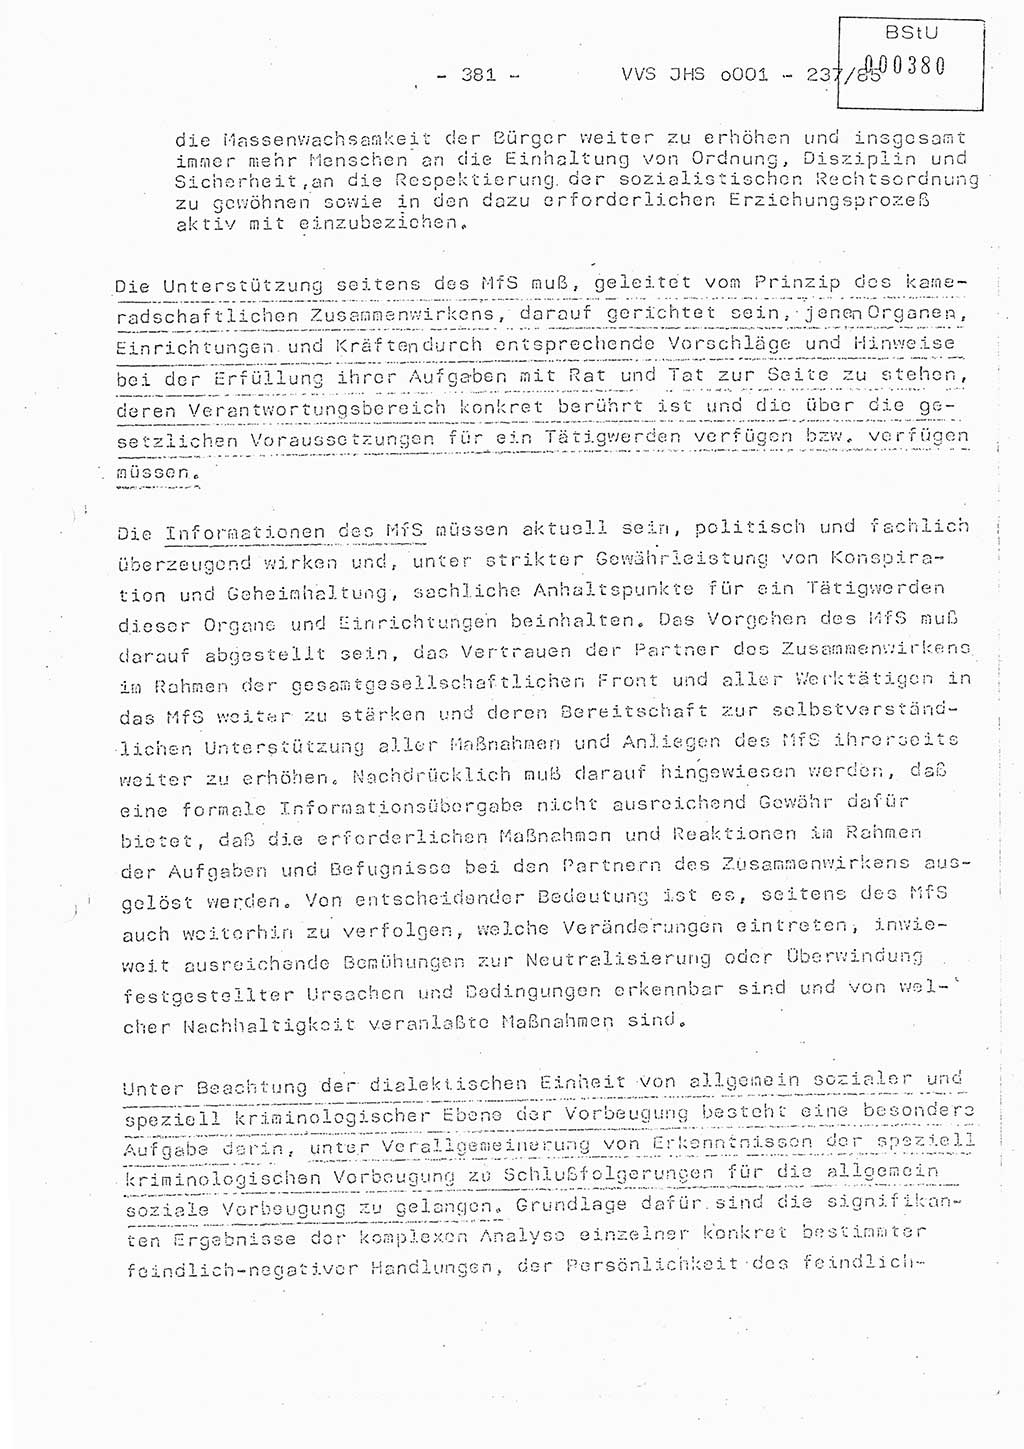 Dissertation Oberstleutnant Peter Jakulski (JHS), Oberstleutnat Christian Rudolph (HA Ⅸ), Major Horst Böttger (ZMD), Major Wolfgang Grüneberg (JHS), Major Albert Meutsch (JHS), Ministerium für Staatssicherheit (MfS) [Deutsche Demokratische Republik (DDR)], Juristische Hochschule (JHS), Vertrauliche Verschlußsache (VVS) o001-237/85, Potsdam 1985, Seite 381 (Diss. MfS DDR JHS VVS o001-237/85 1985, S. 381)